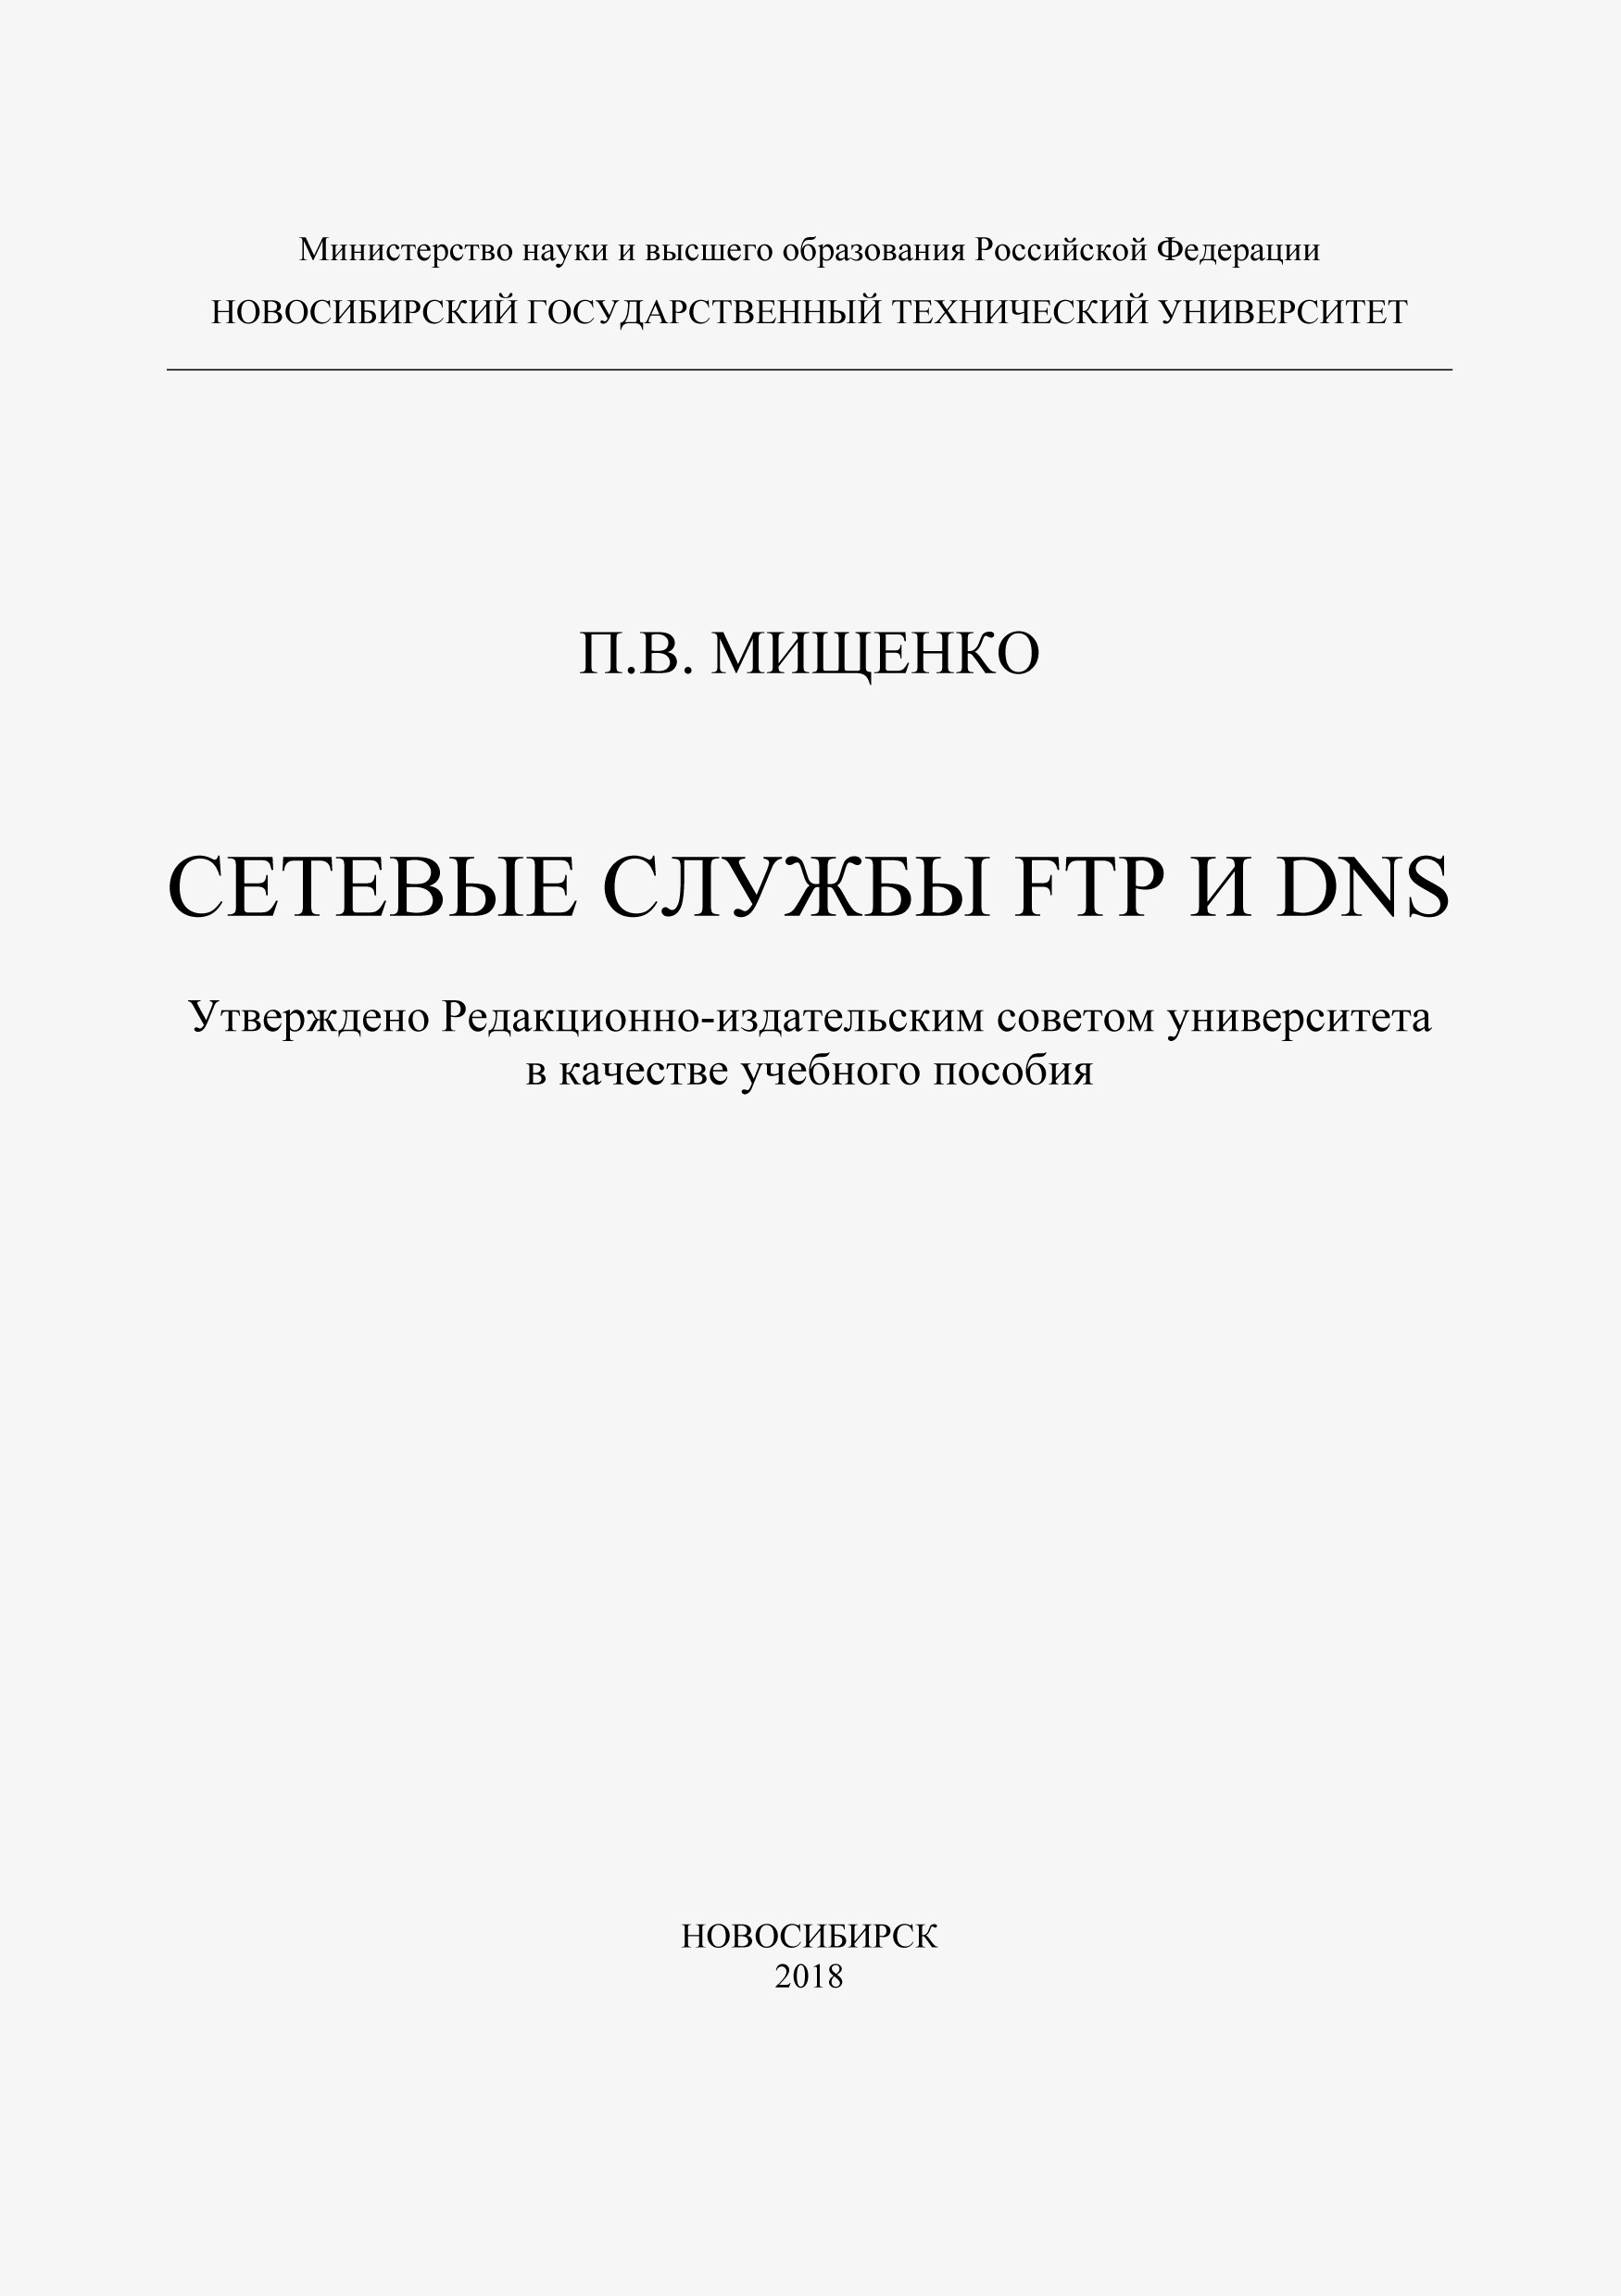 Книга  Сетевые службы FTP и DNS созданная П. В. Мищенко может относится к жанру интернет, информационная безопасность, ОС и сети, программы, учебники и пособия для вузов. Стоимость электронной книги Сетевые службы FTP и DNS с идентификатором 48431100 составляет 106.00 руб.